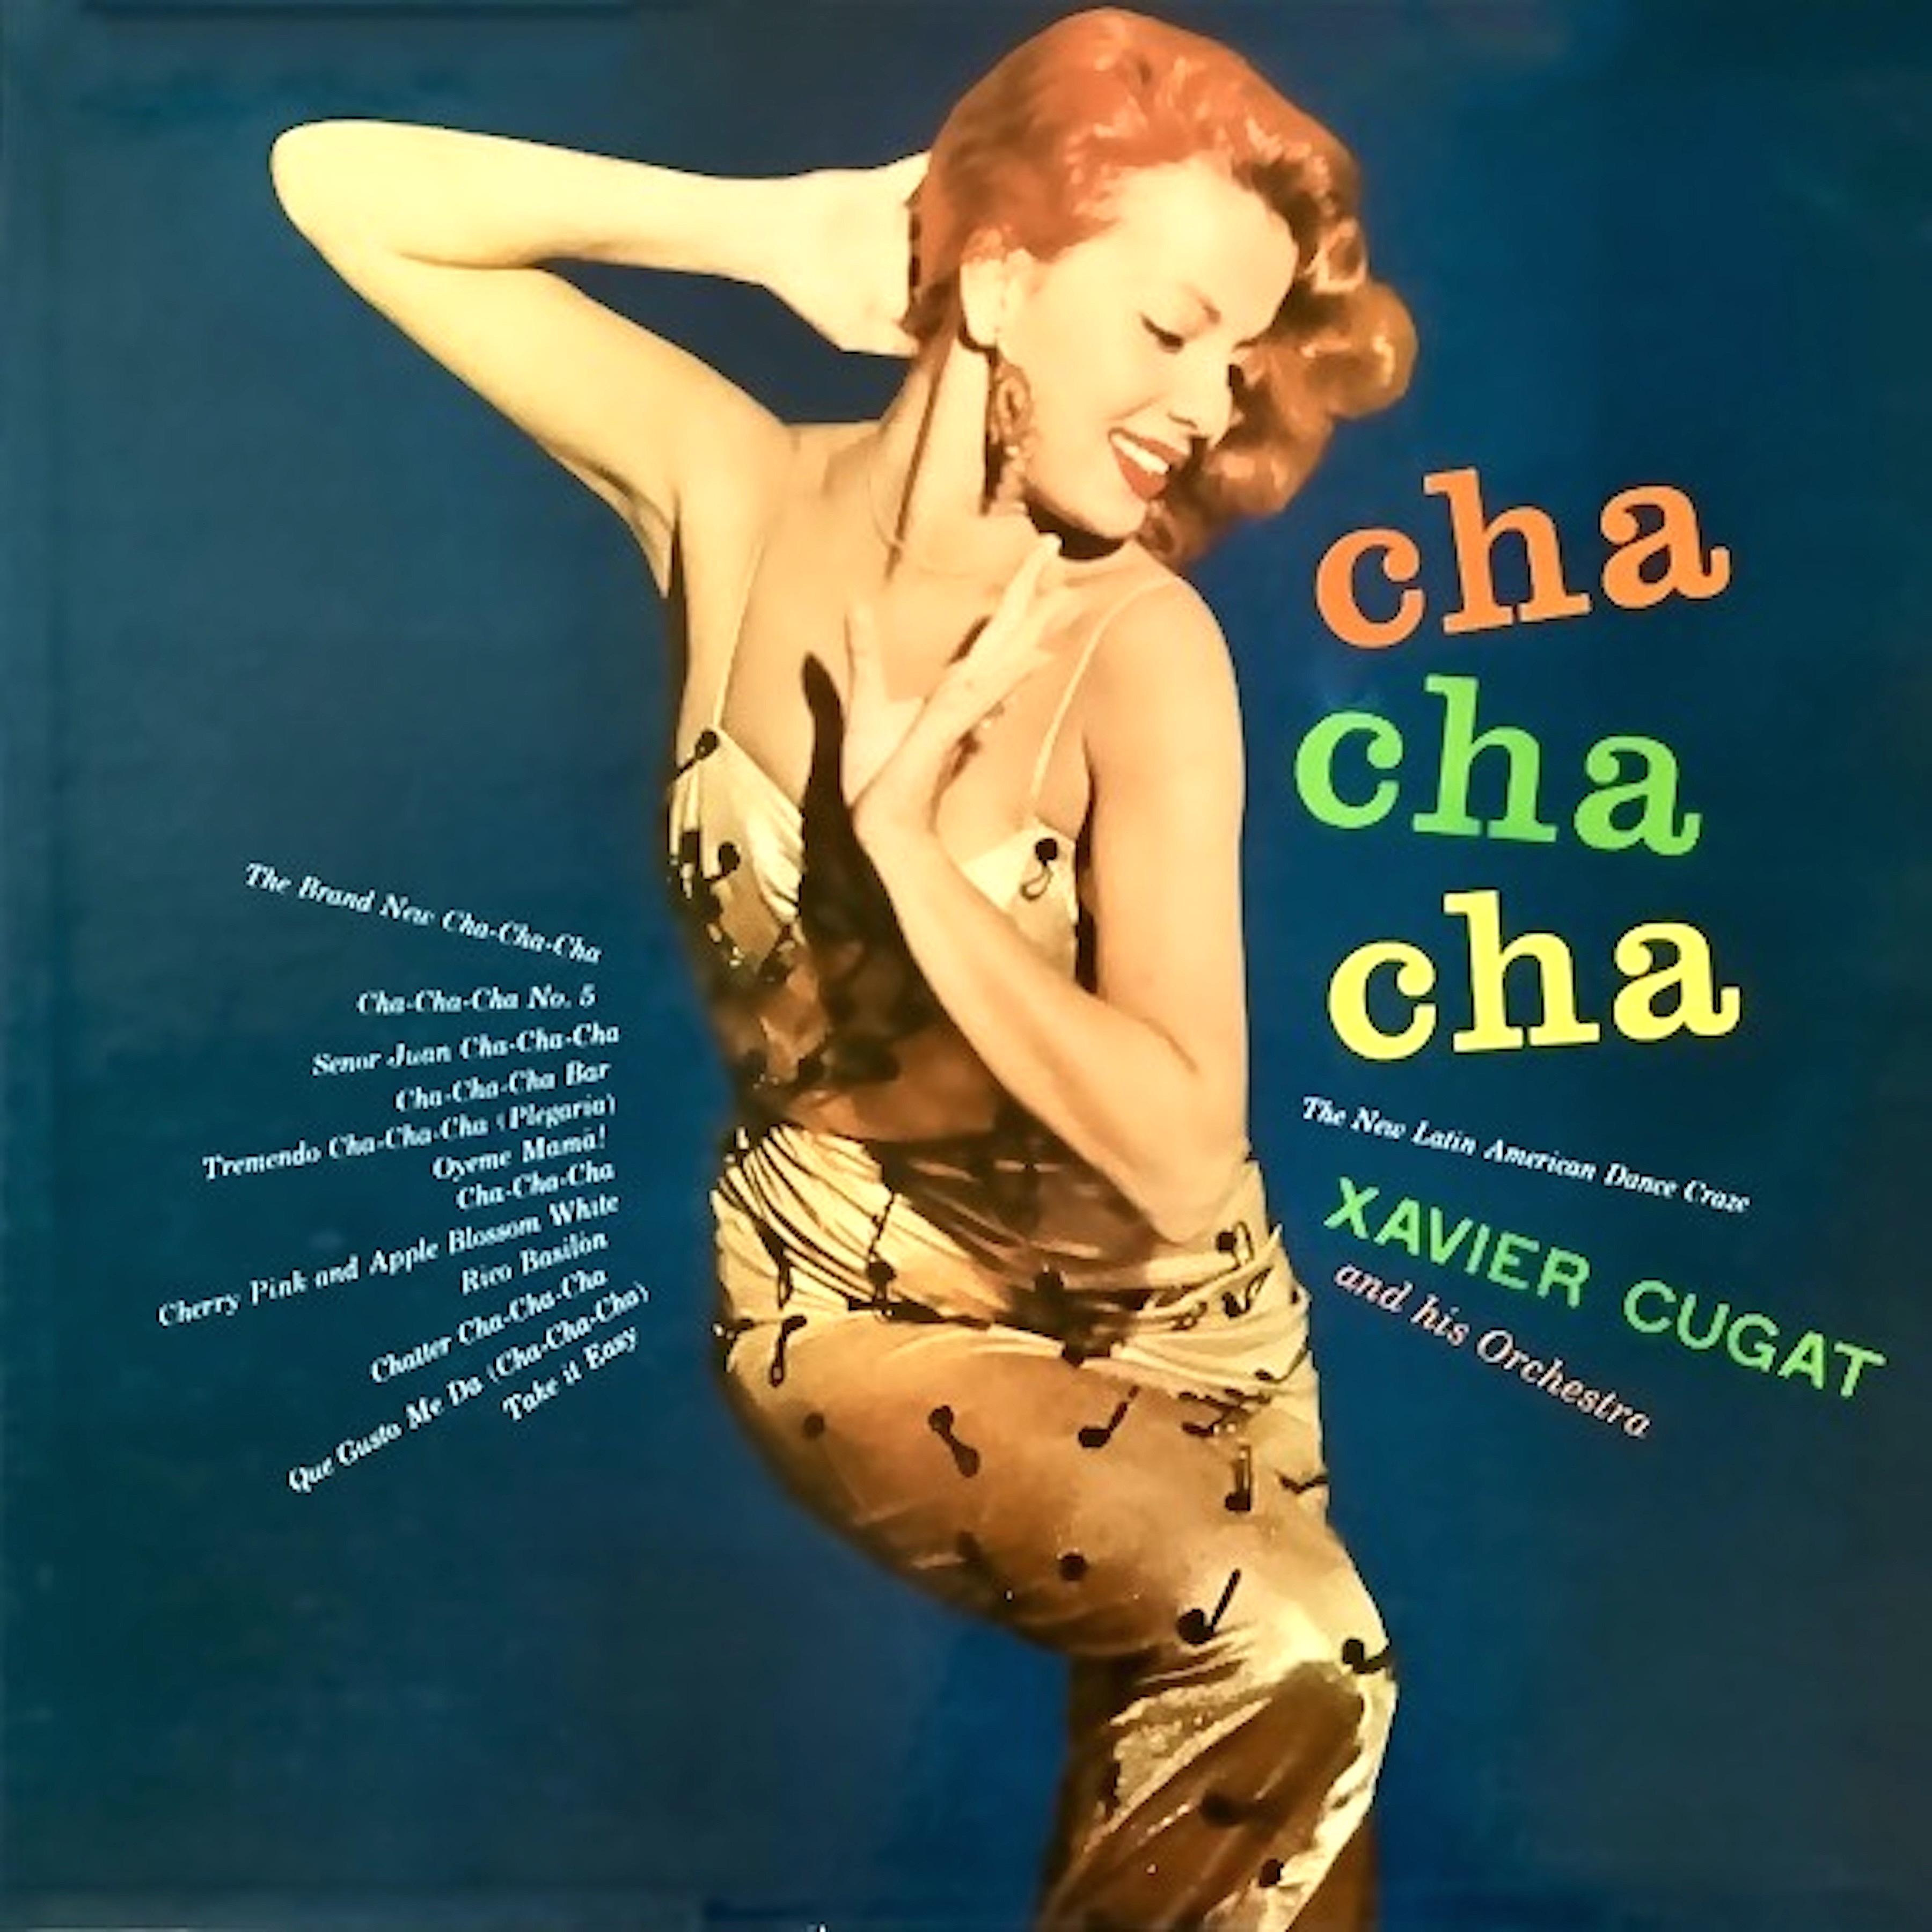 Xavier Cugat and His Orchestra - Cha-Cha-Cha Bar (Remastered)